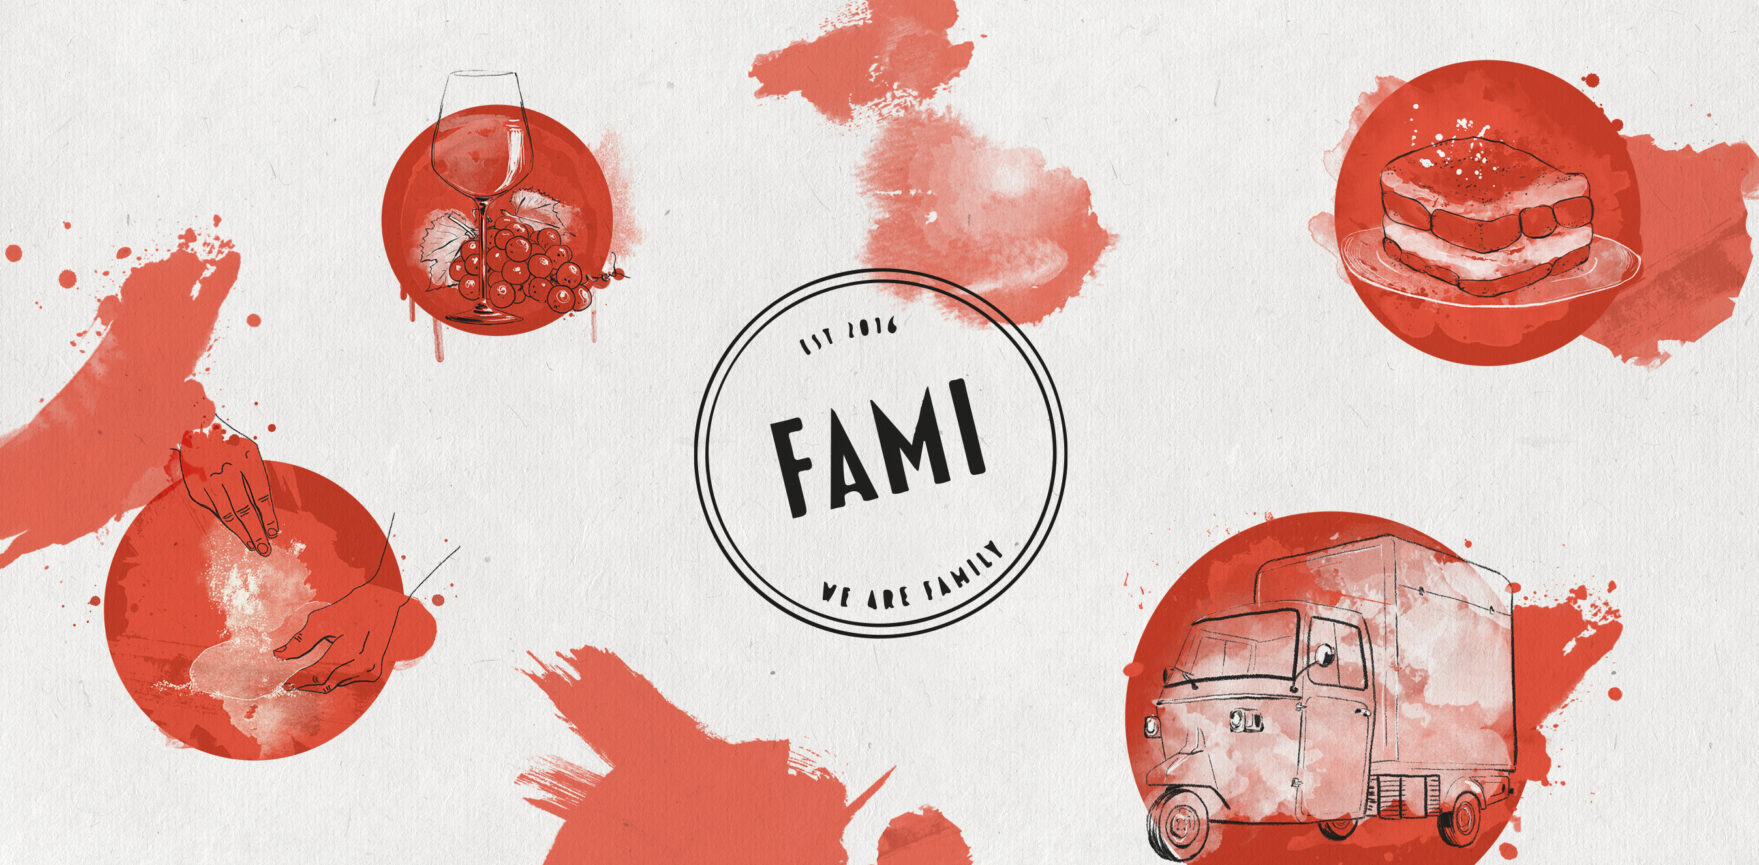 FAMI Illustrationen zur Verwendung in Print und Digitalen Medien – Anwendung auf der Website